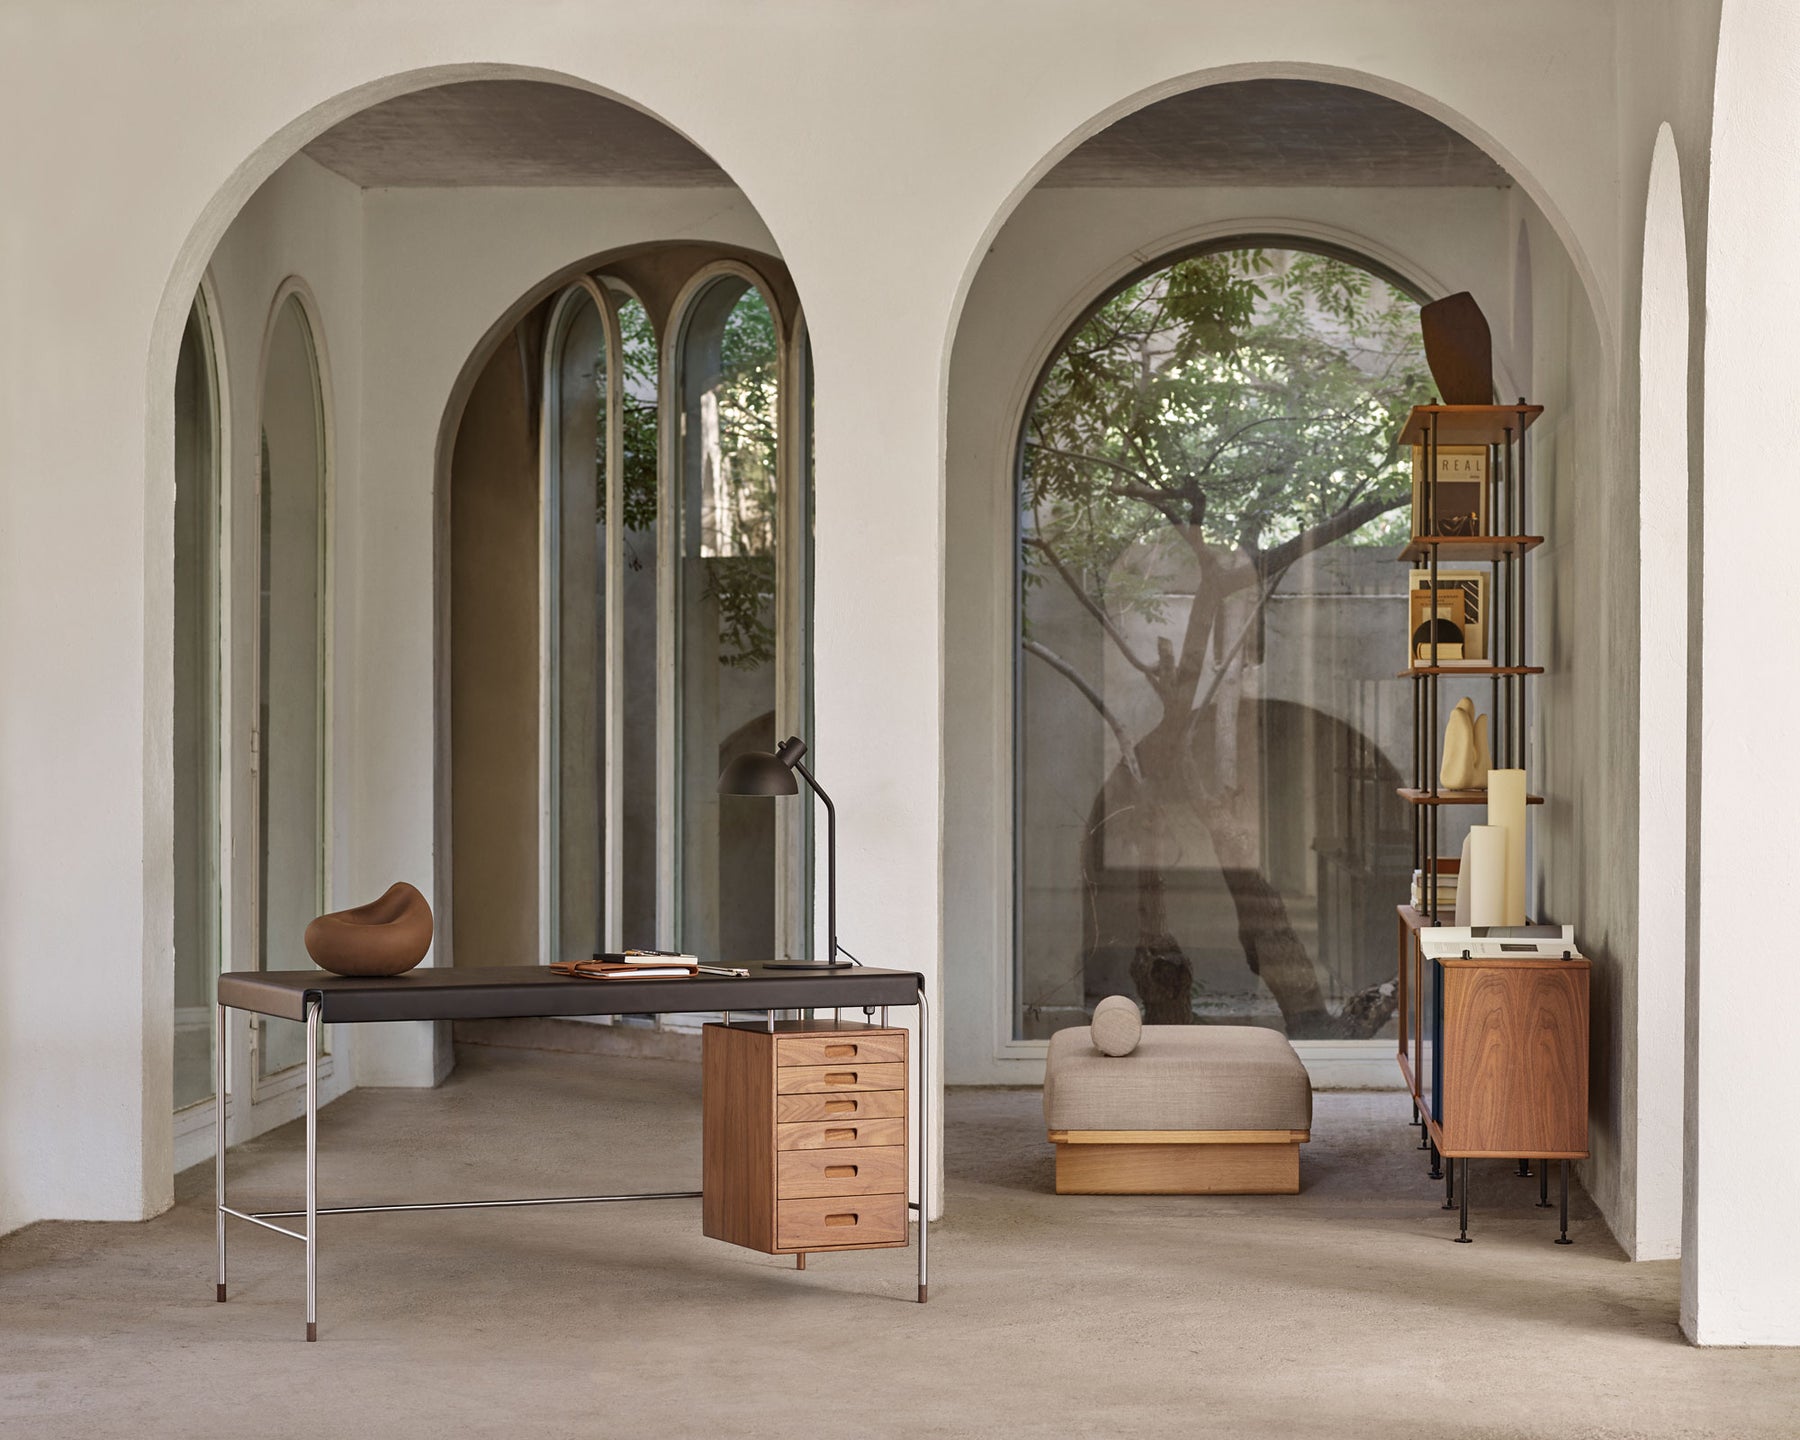 Arne Jacobsen Furniture Design | DSHOP